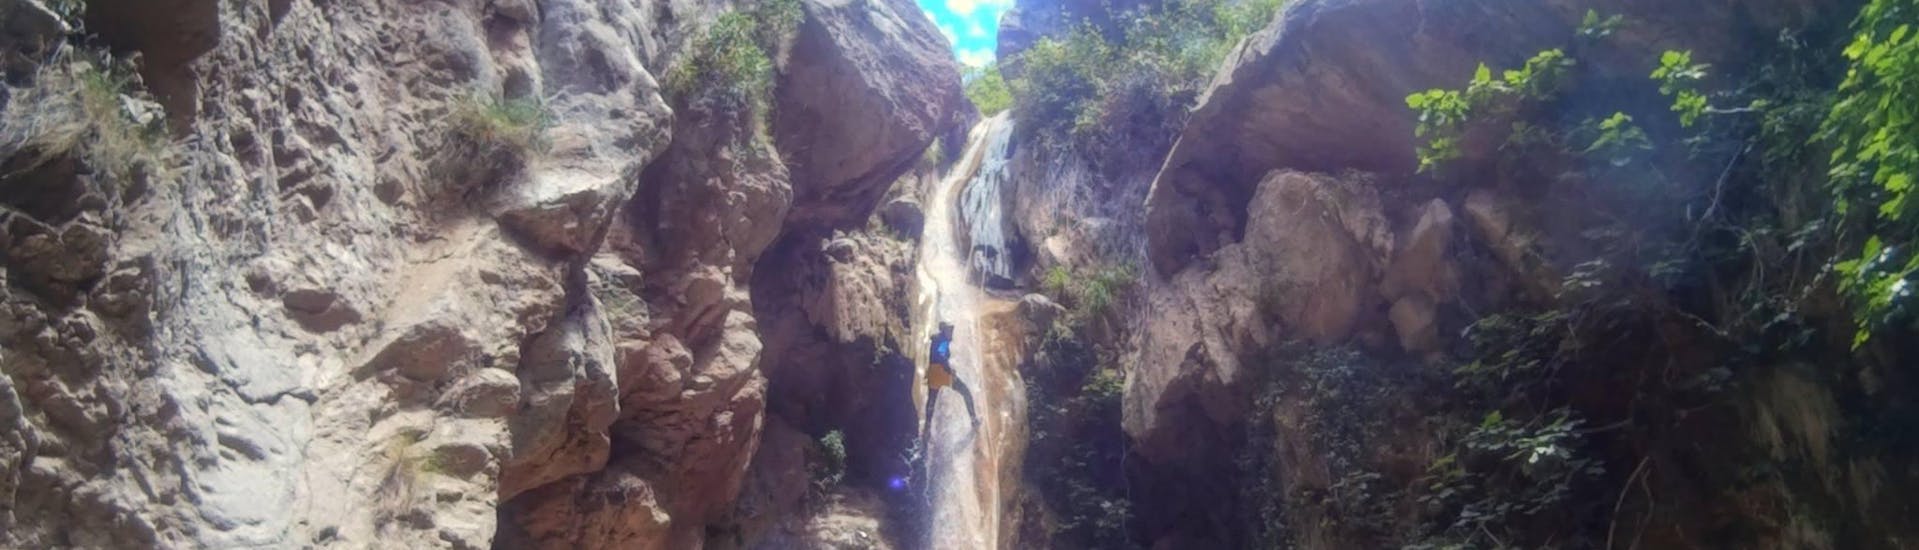 Sportliche Canyoning-Tour - Parque Natural Sierras de Tejeda, Almijara y Alhama.